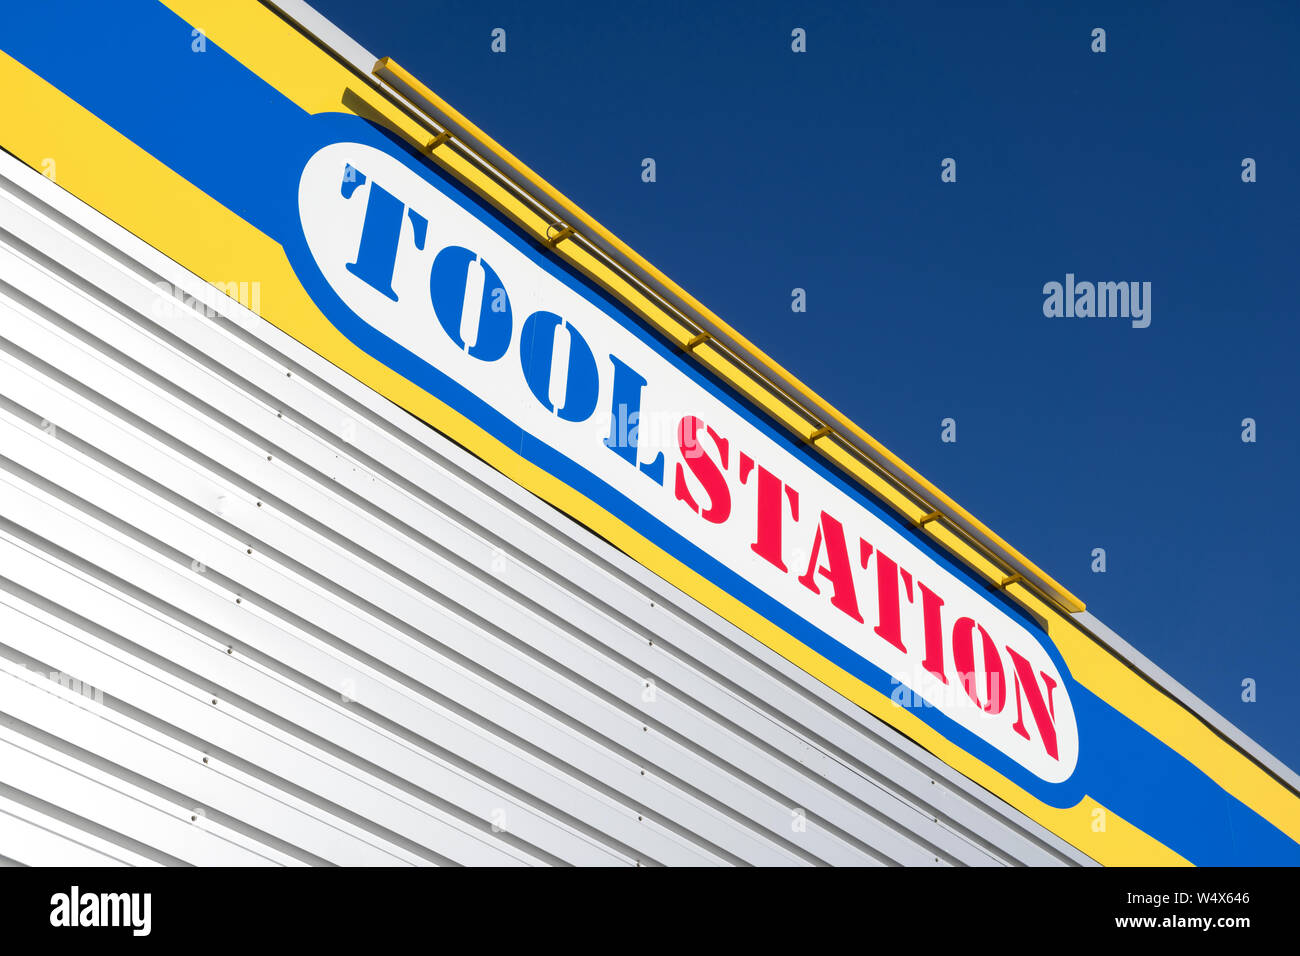 Toolstation signe en direction générale. Toolstation est un fournisseur d'outils, d'accessoires et de produits de construction pour les professionnels et les bricoleurs. Banque D'Images